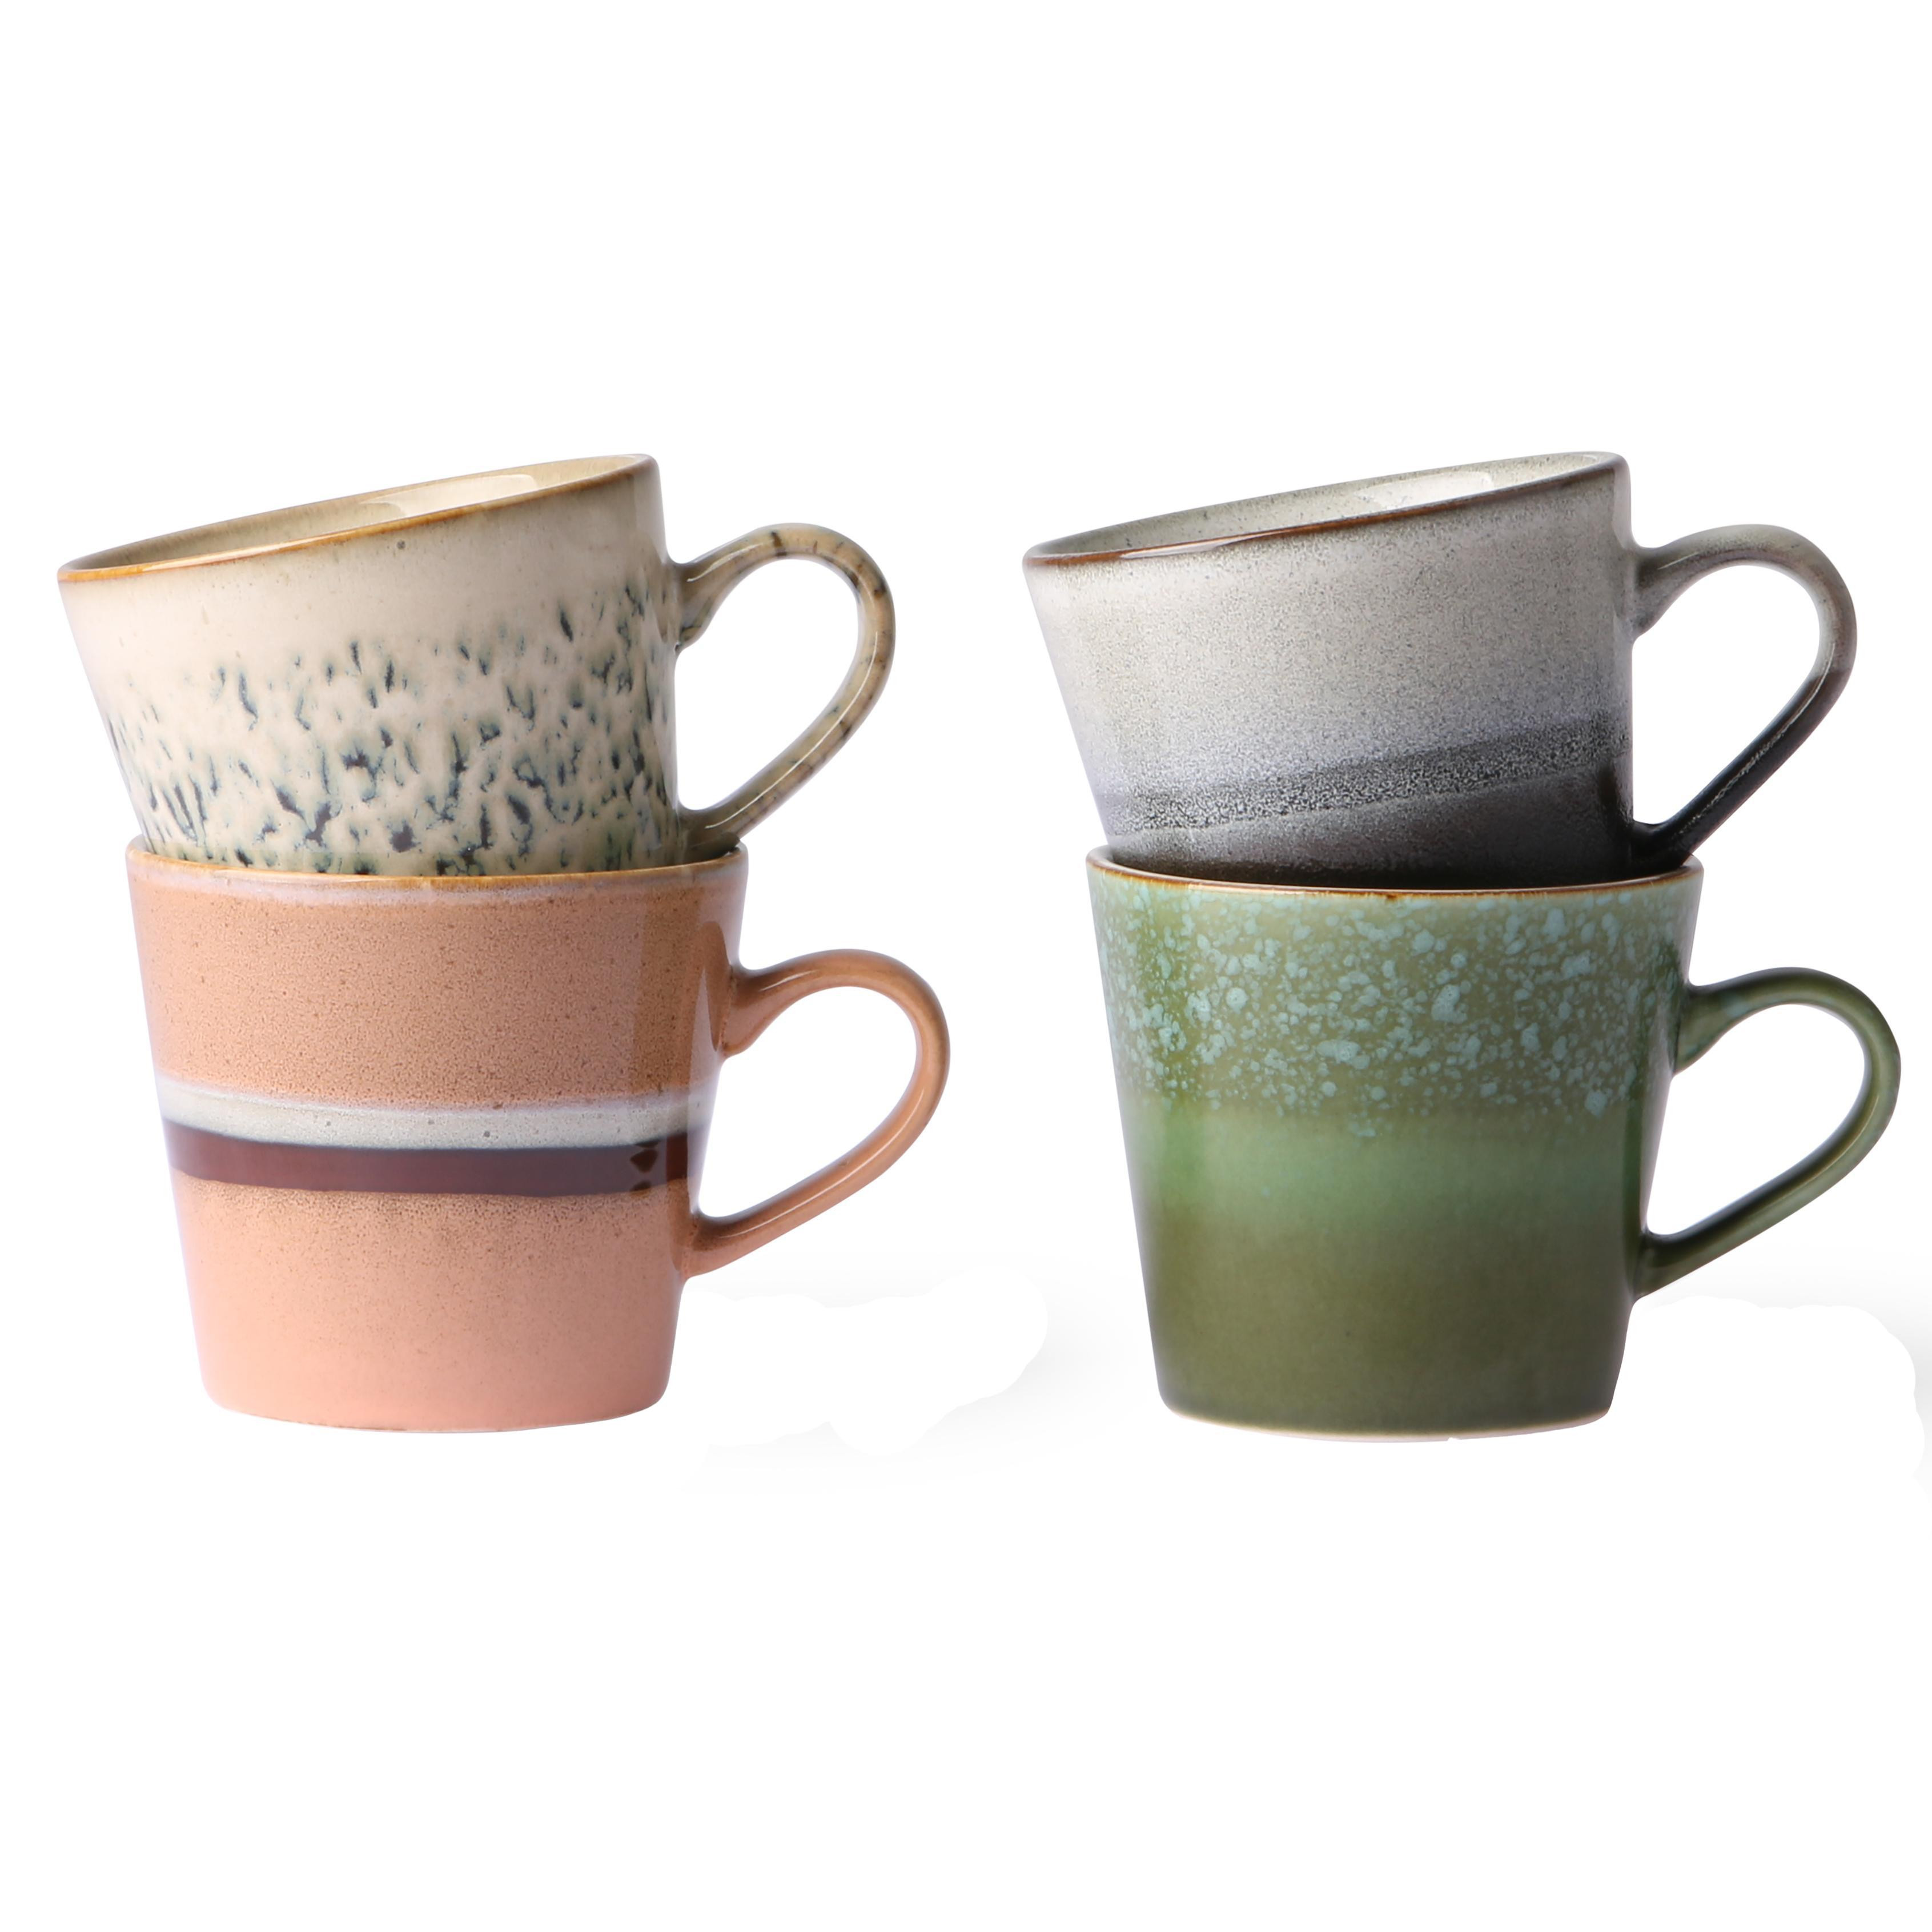 reactie Vermenigvuldiging Spreekwoord HKliving 70's Ceramic Cappuccino mok kopjes set van 4 virgo | Flinders